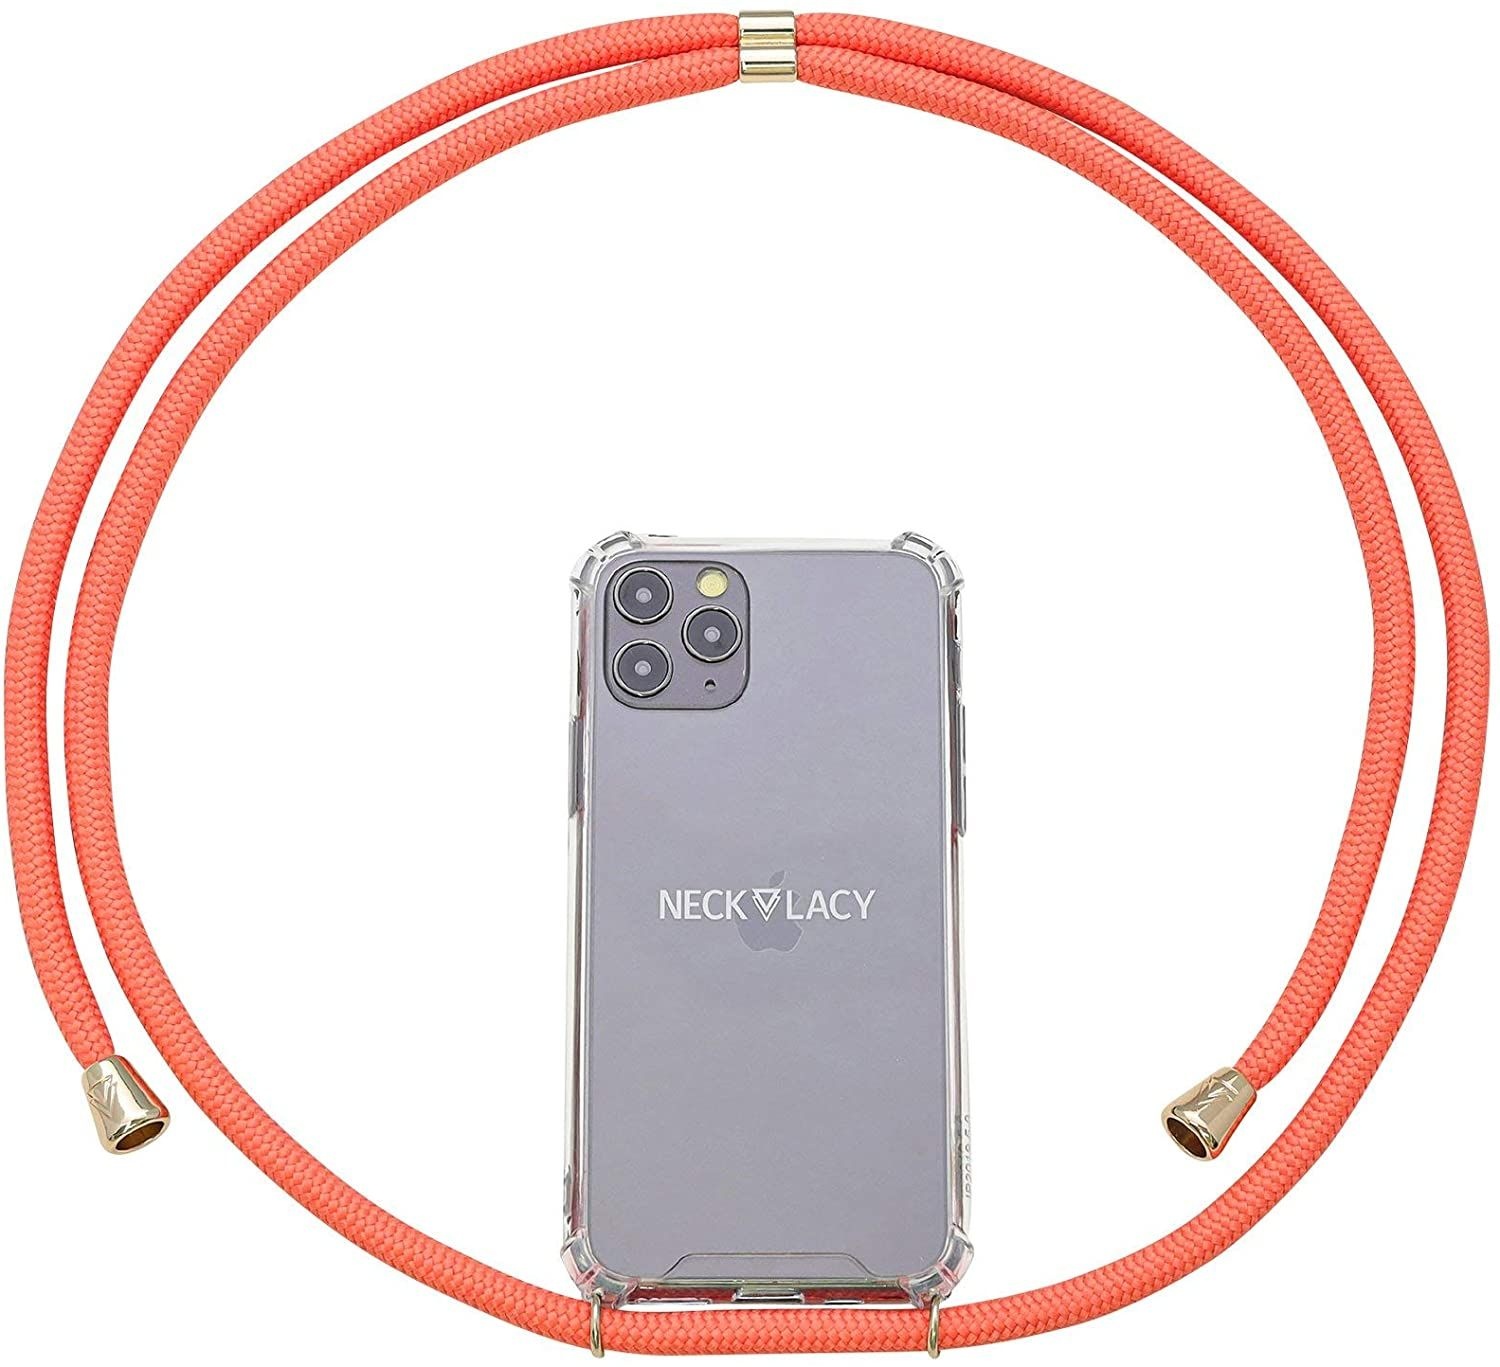 NECKLACY Handykette Handyhülle zum umhängen - für iPhone 7/8 - Case / Handyhülle mit Band zum umhängen - Trageband Hals mit Kordel - Smartphone Necklace, Coral Reef